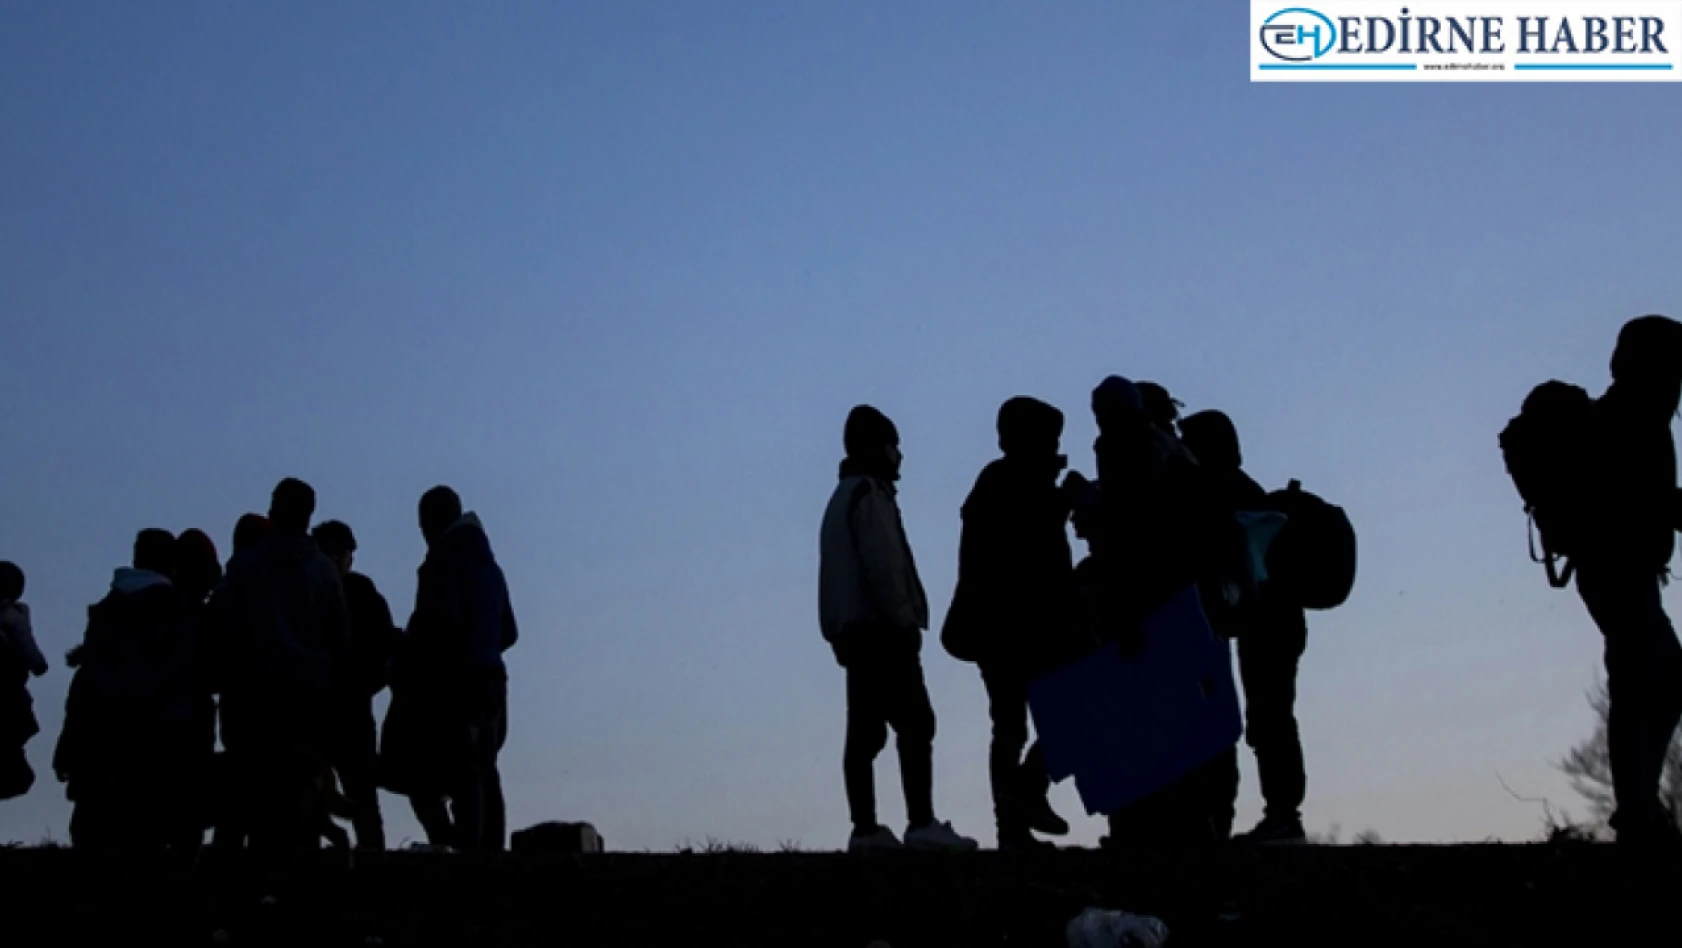 Edirne'de 55 düzensiz göçmen yakalandı